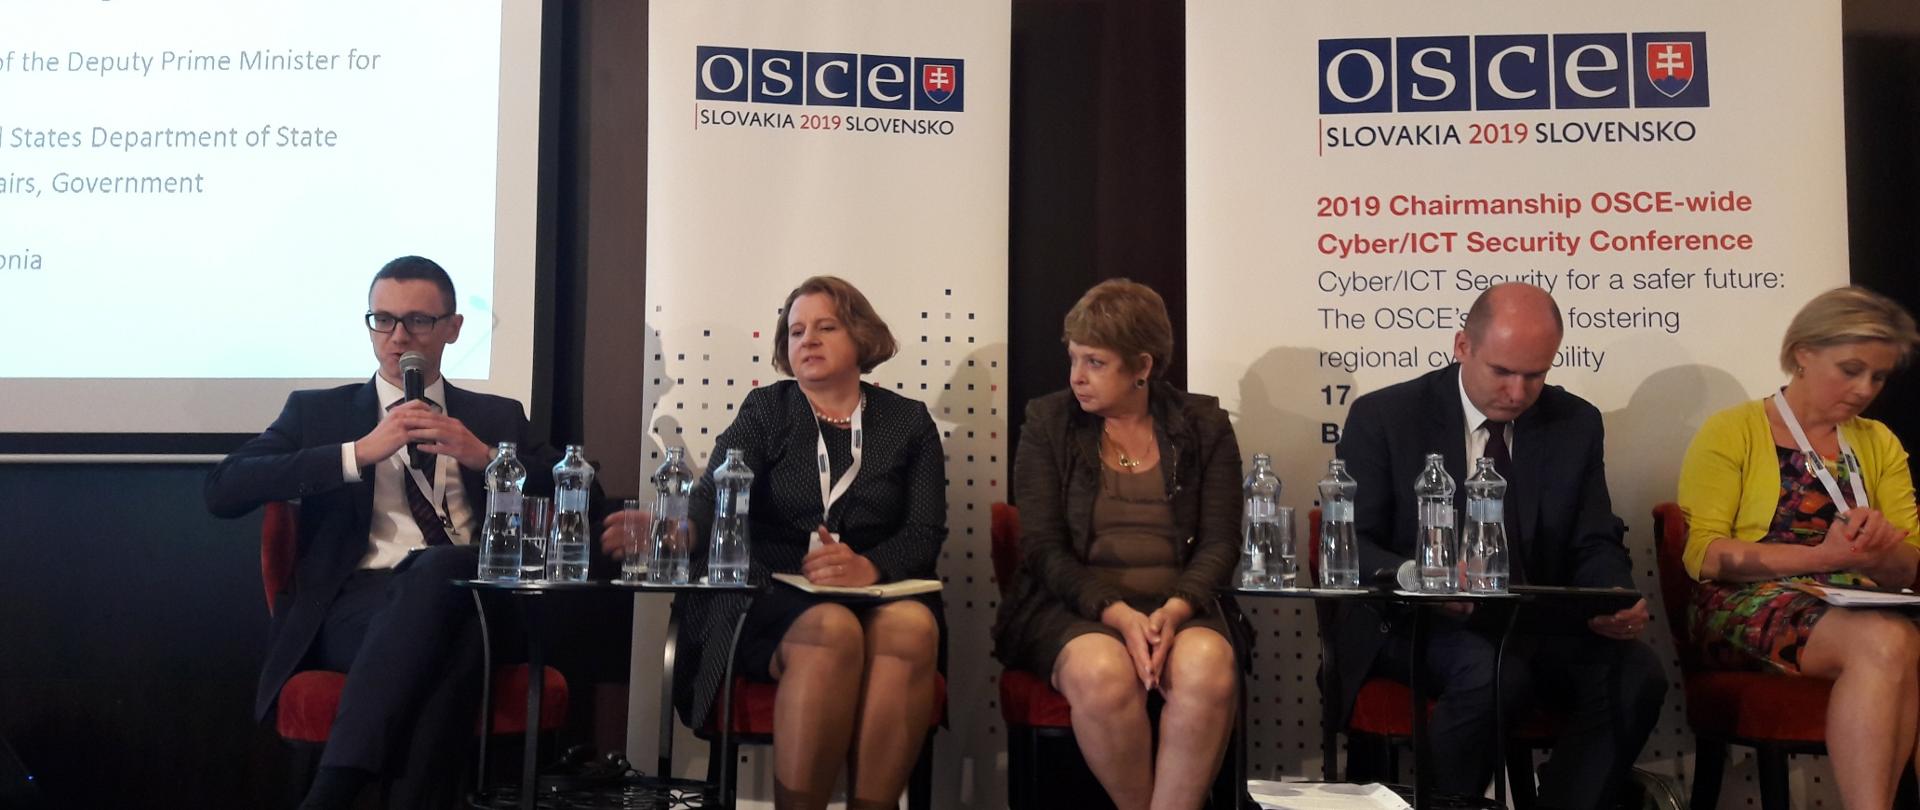 OSCE Slovakia 2019